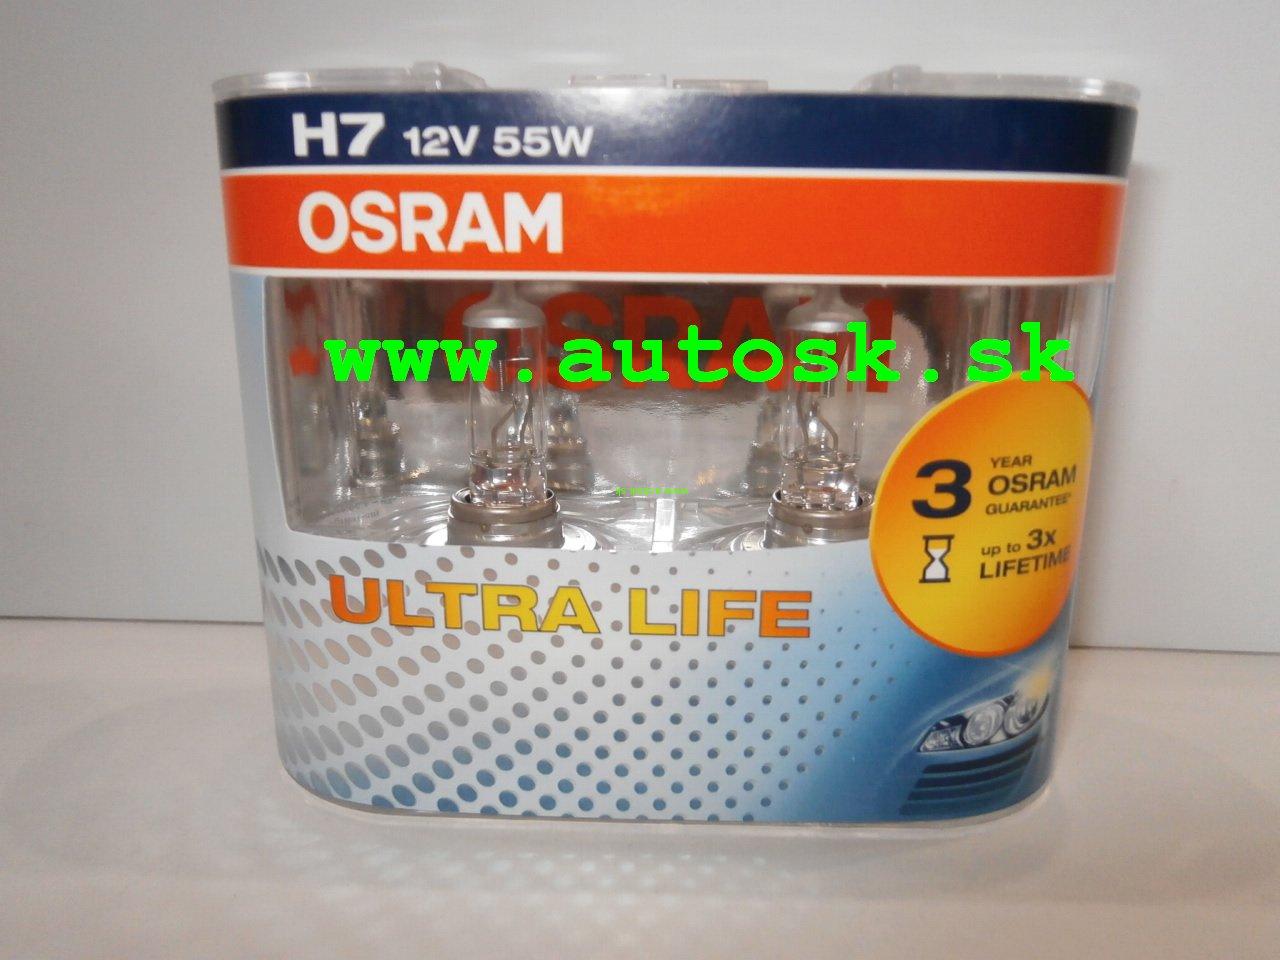 Sada žiaroviek Osram H7 55W 3 násobná životnosť